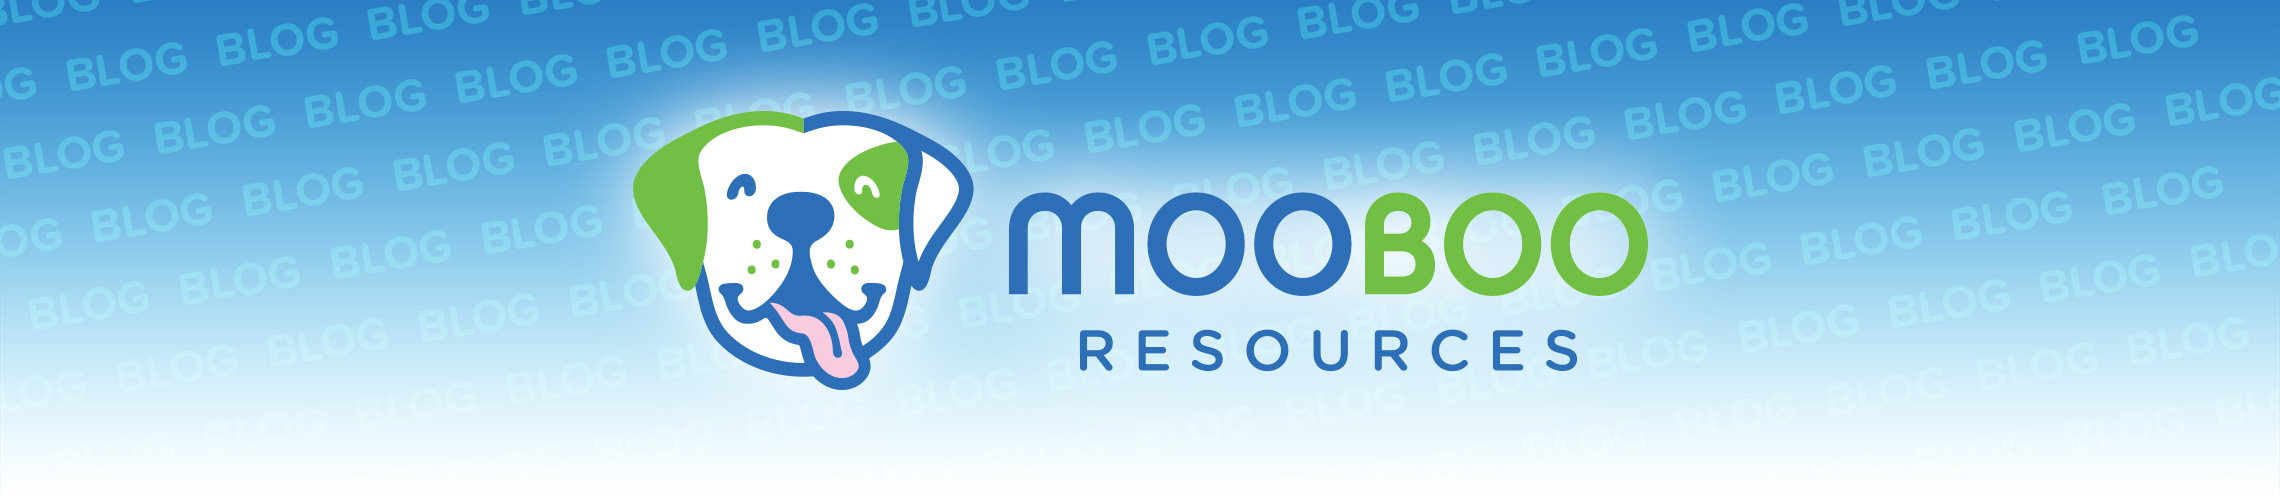 mooboo blog